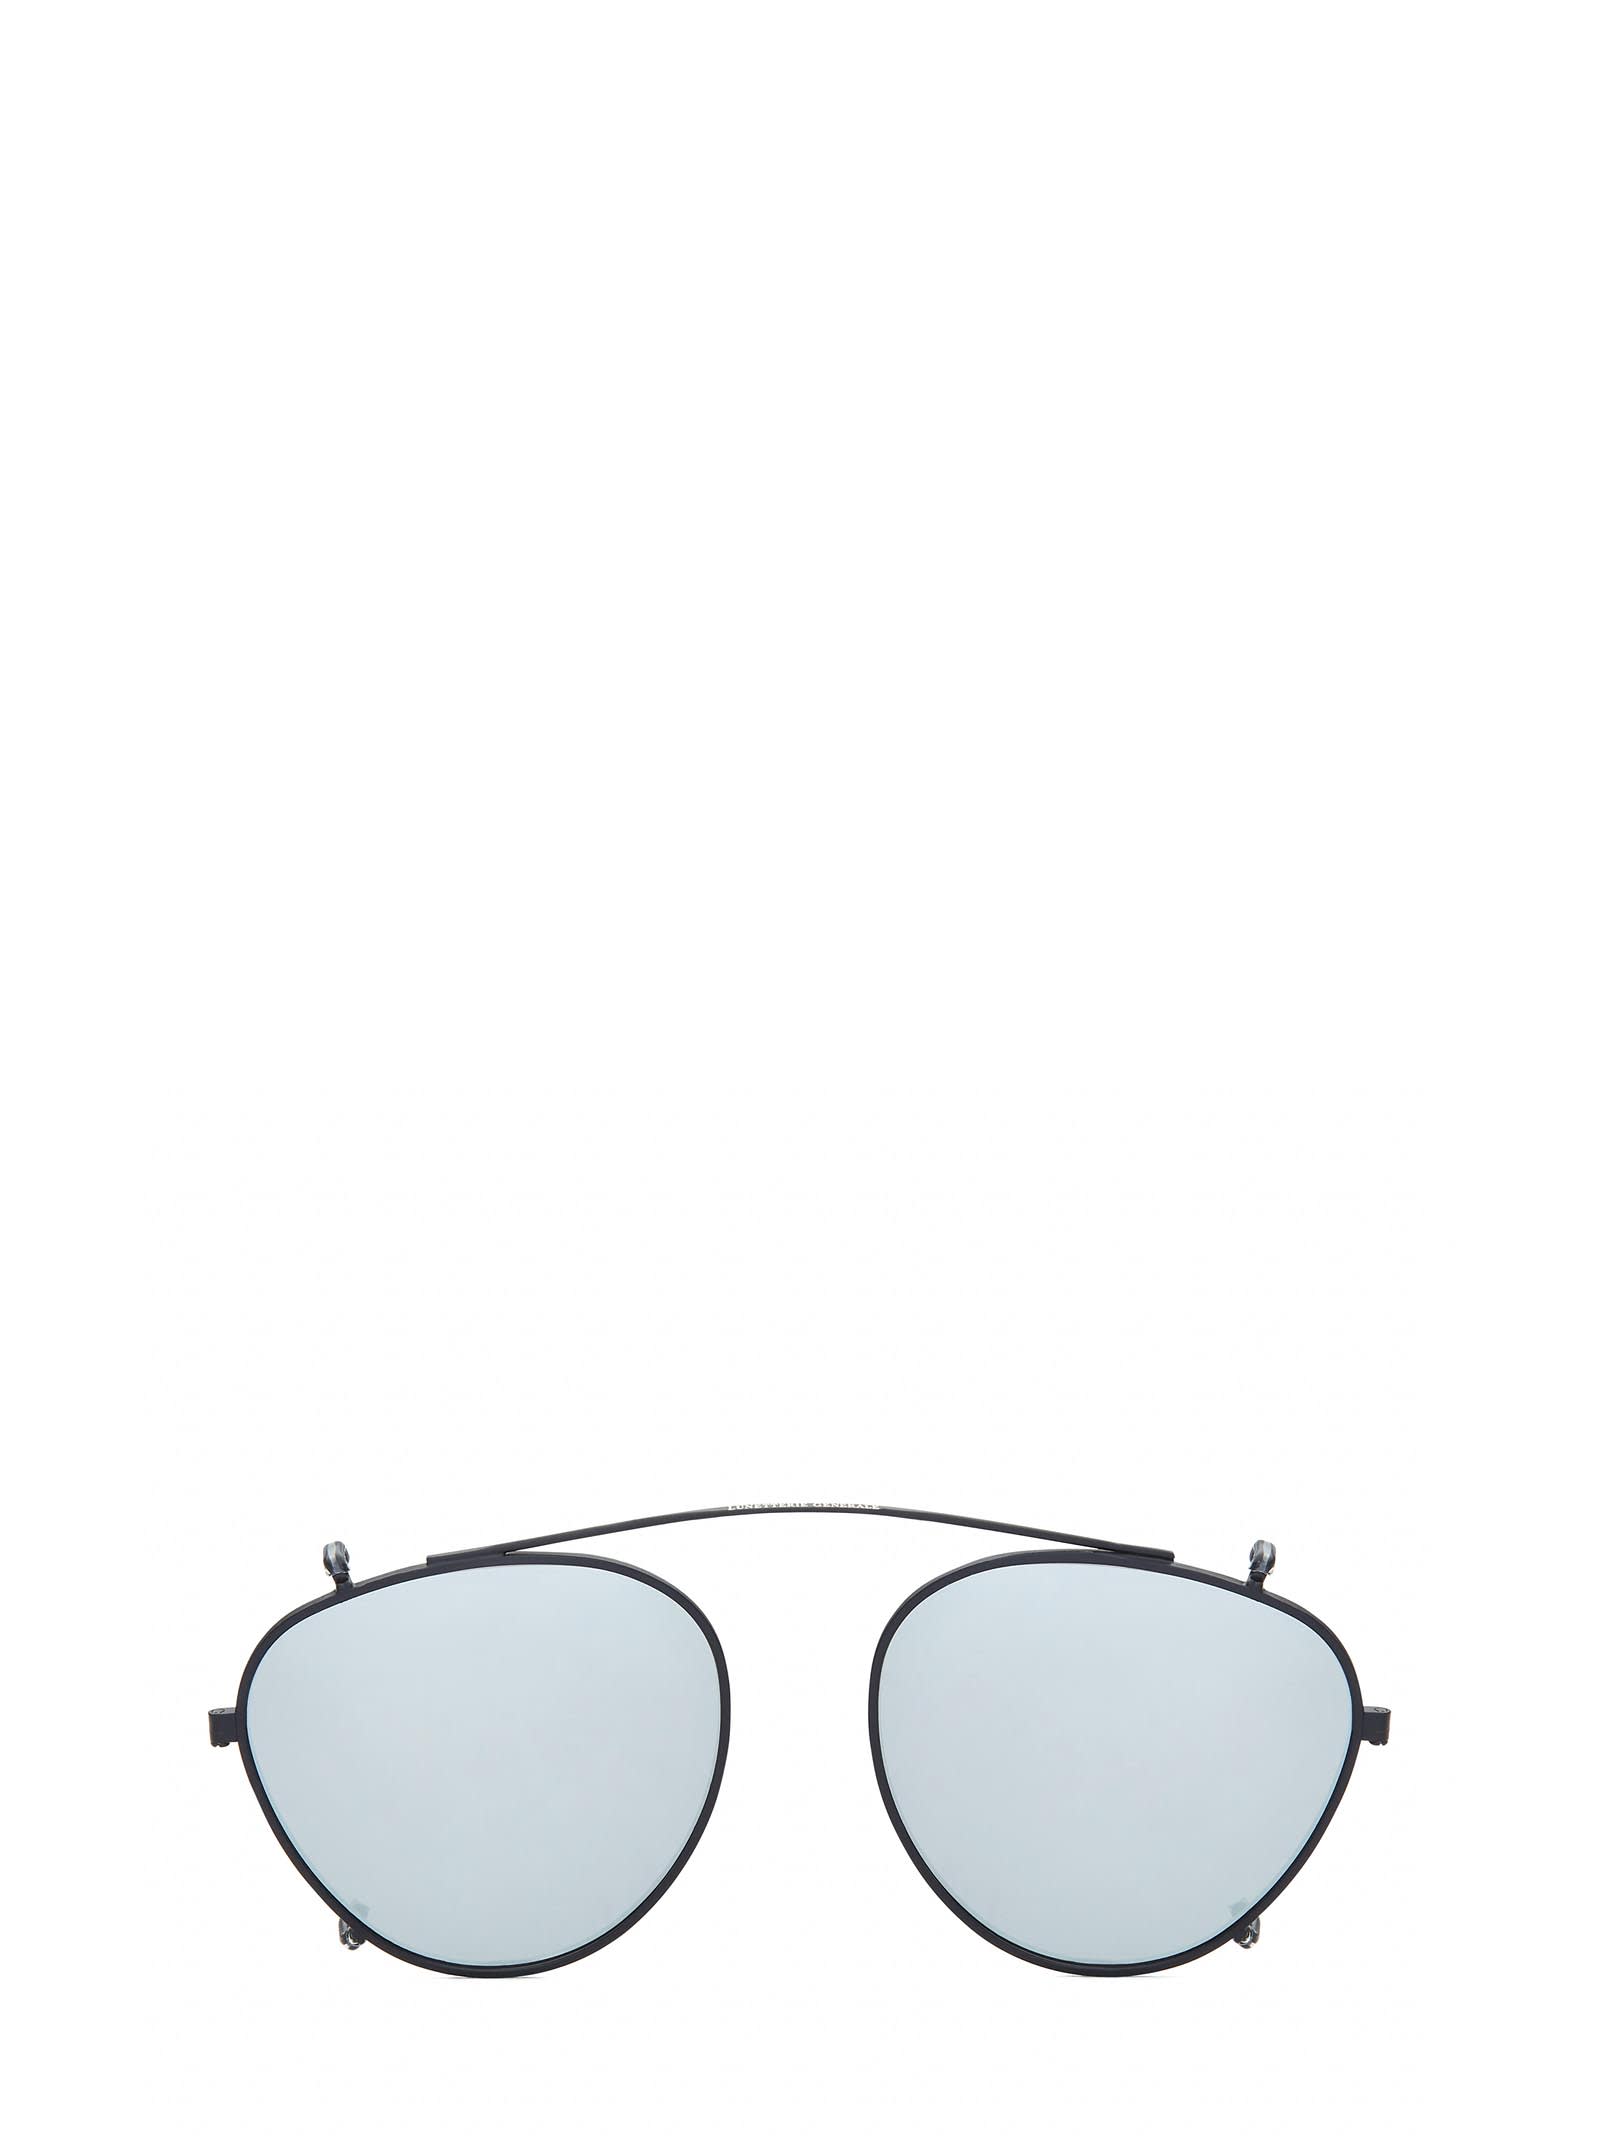 Lunetterie Générale Dolce Vita Clip-on Black/grey Mirror Sunglasses